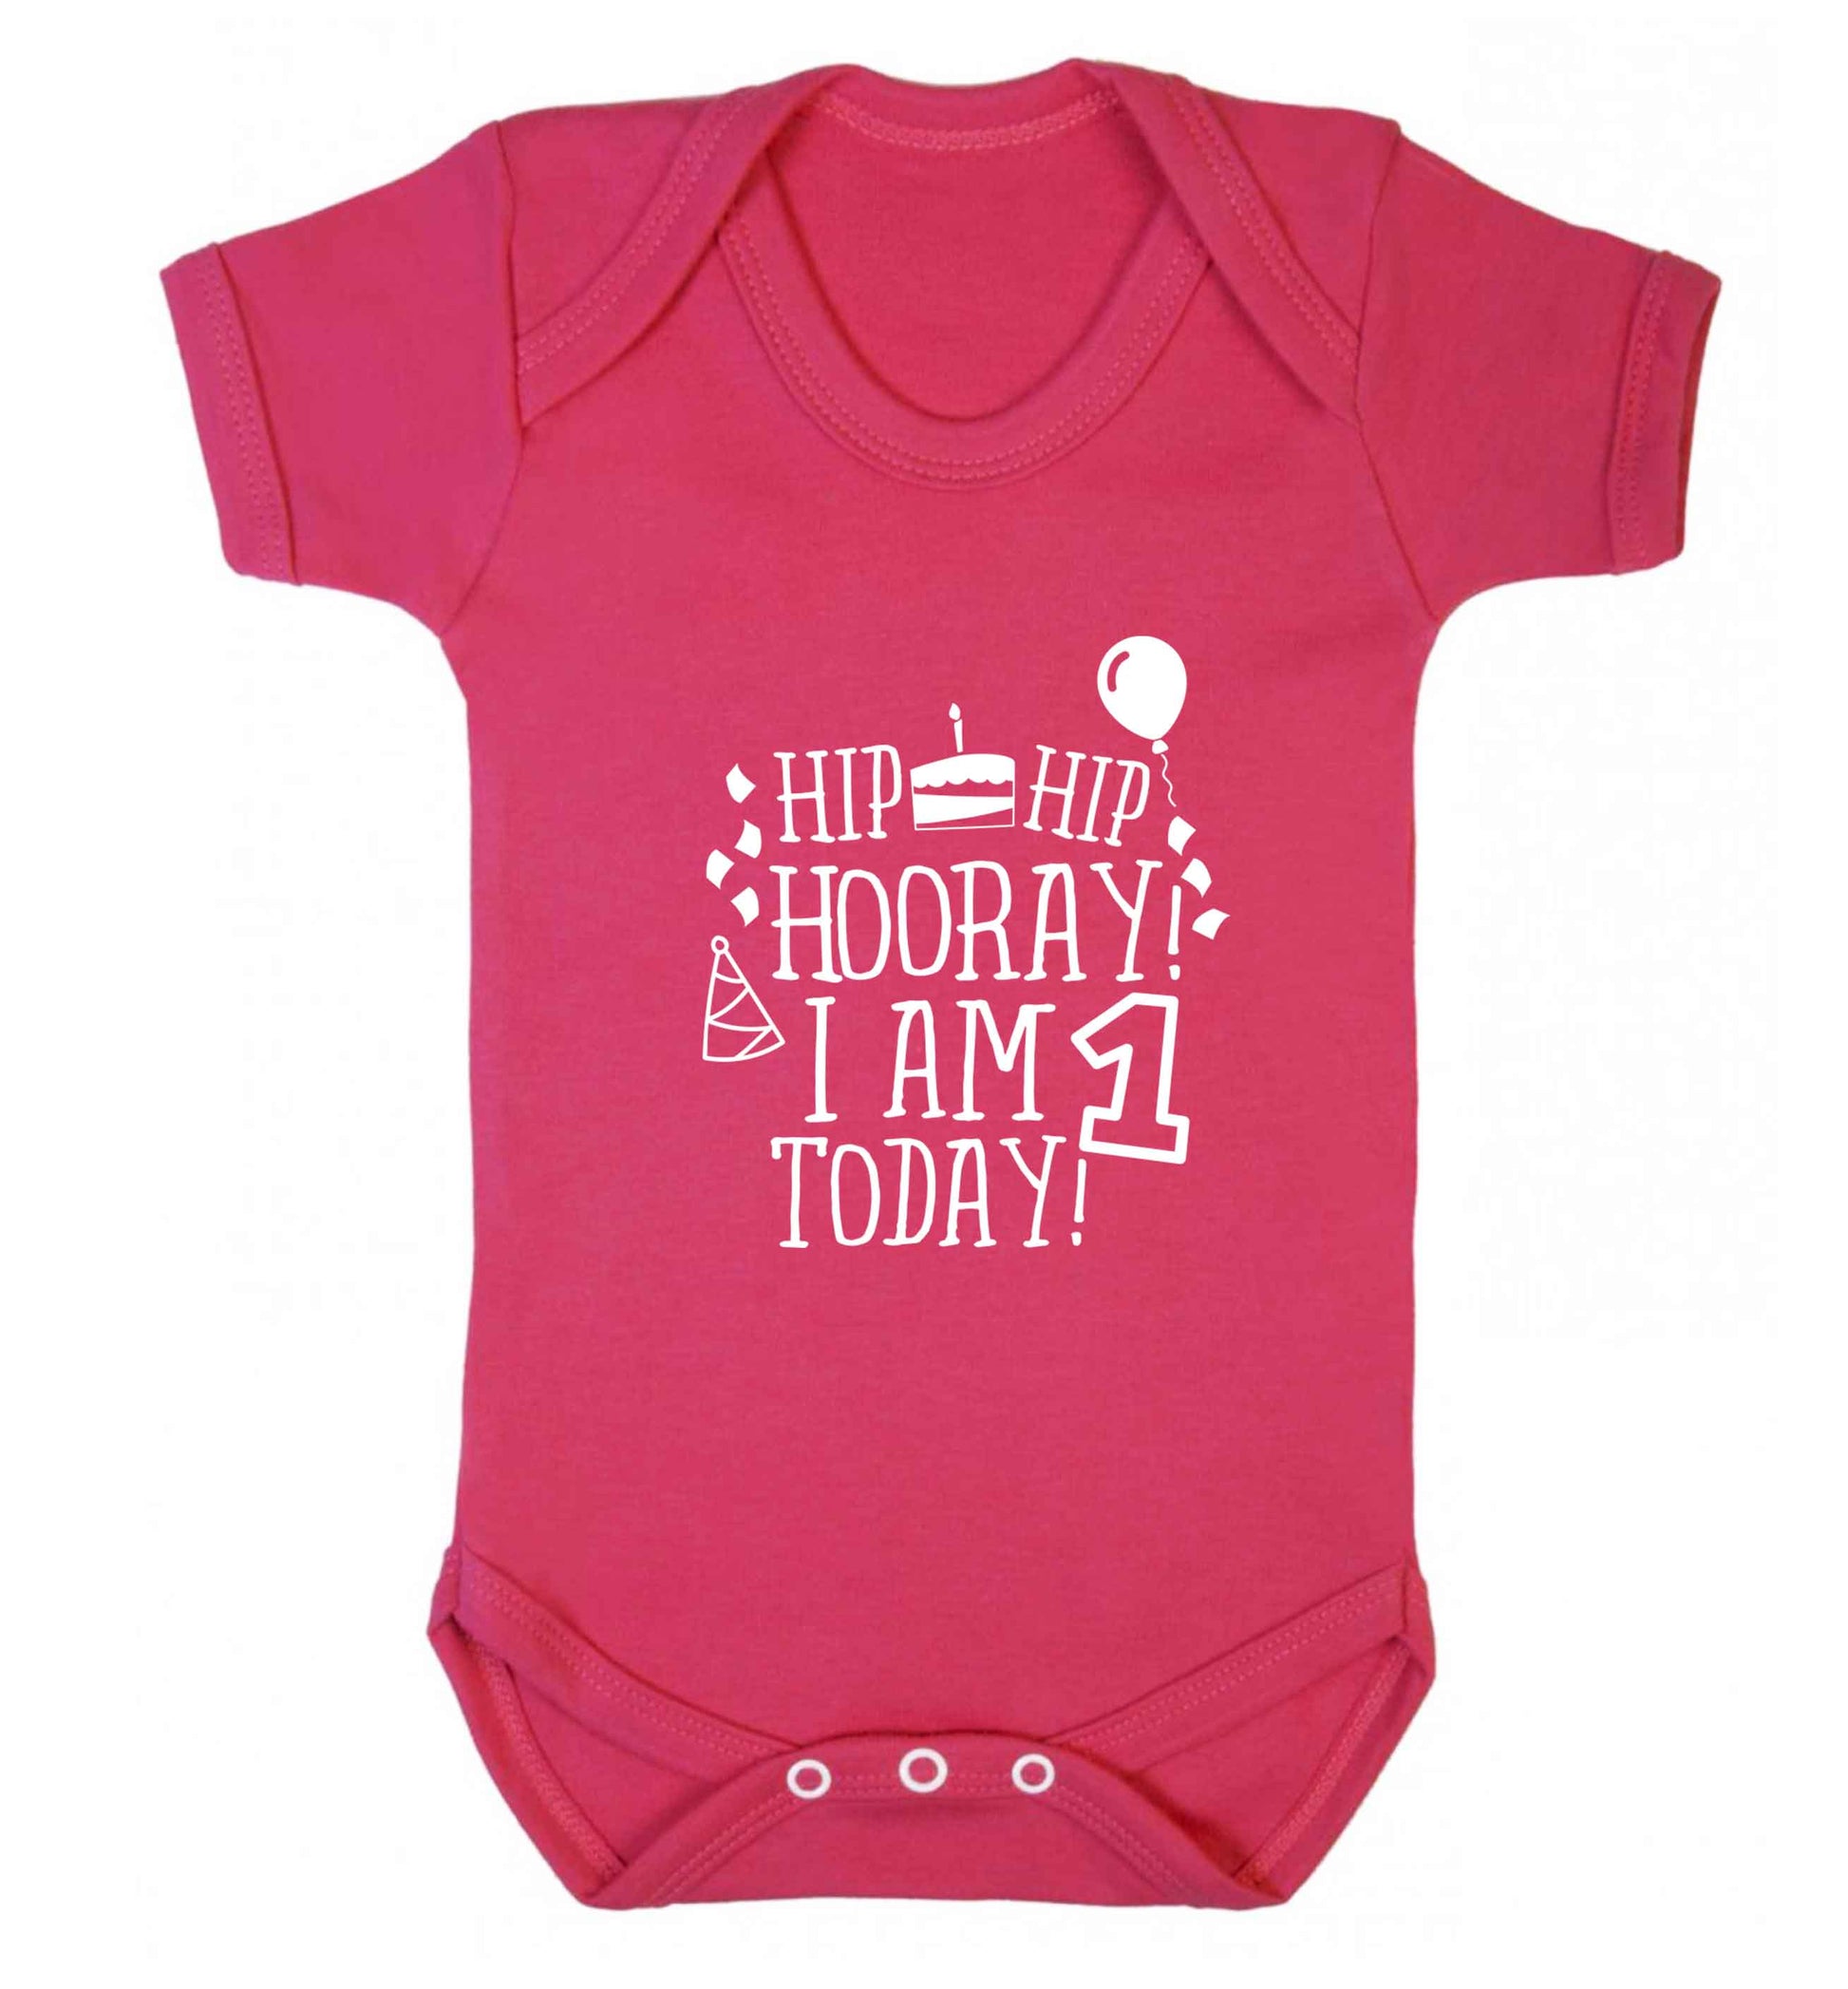 I am One Today baby vest dark pink 18-24 months